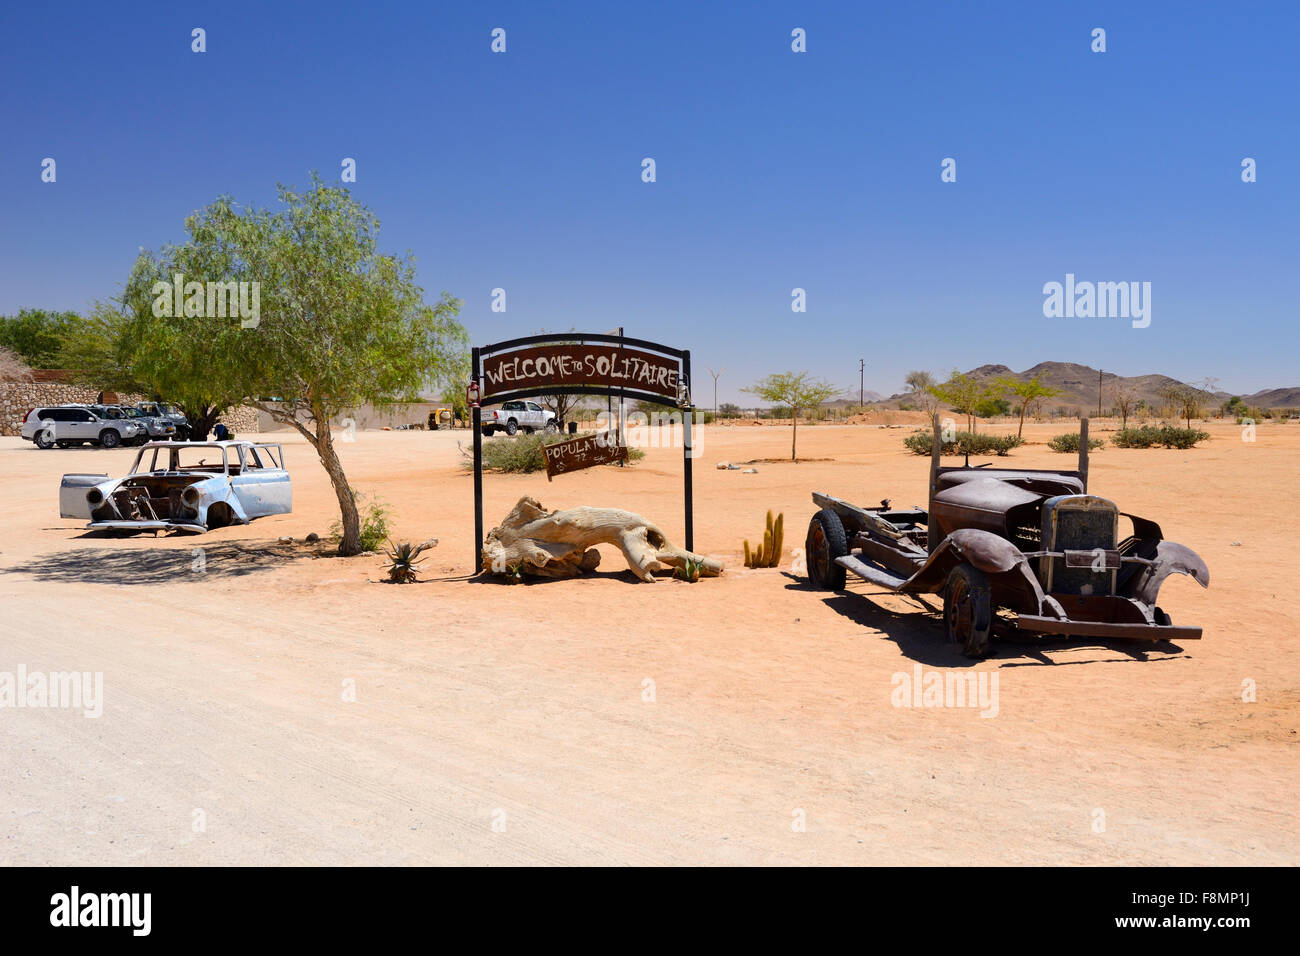 Fahrzeuge am Eingang zur Stadt von Solitaire, Namibia Wüste aufgegeben Stockfoto